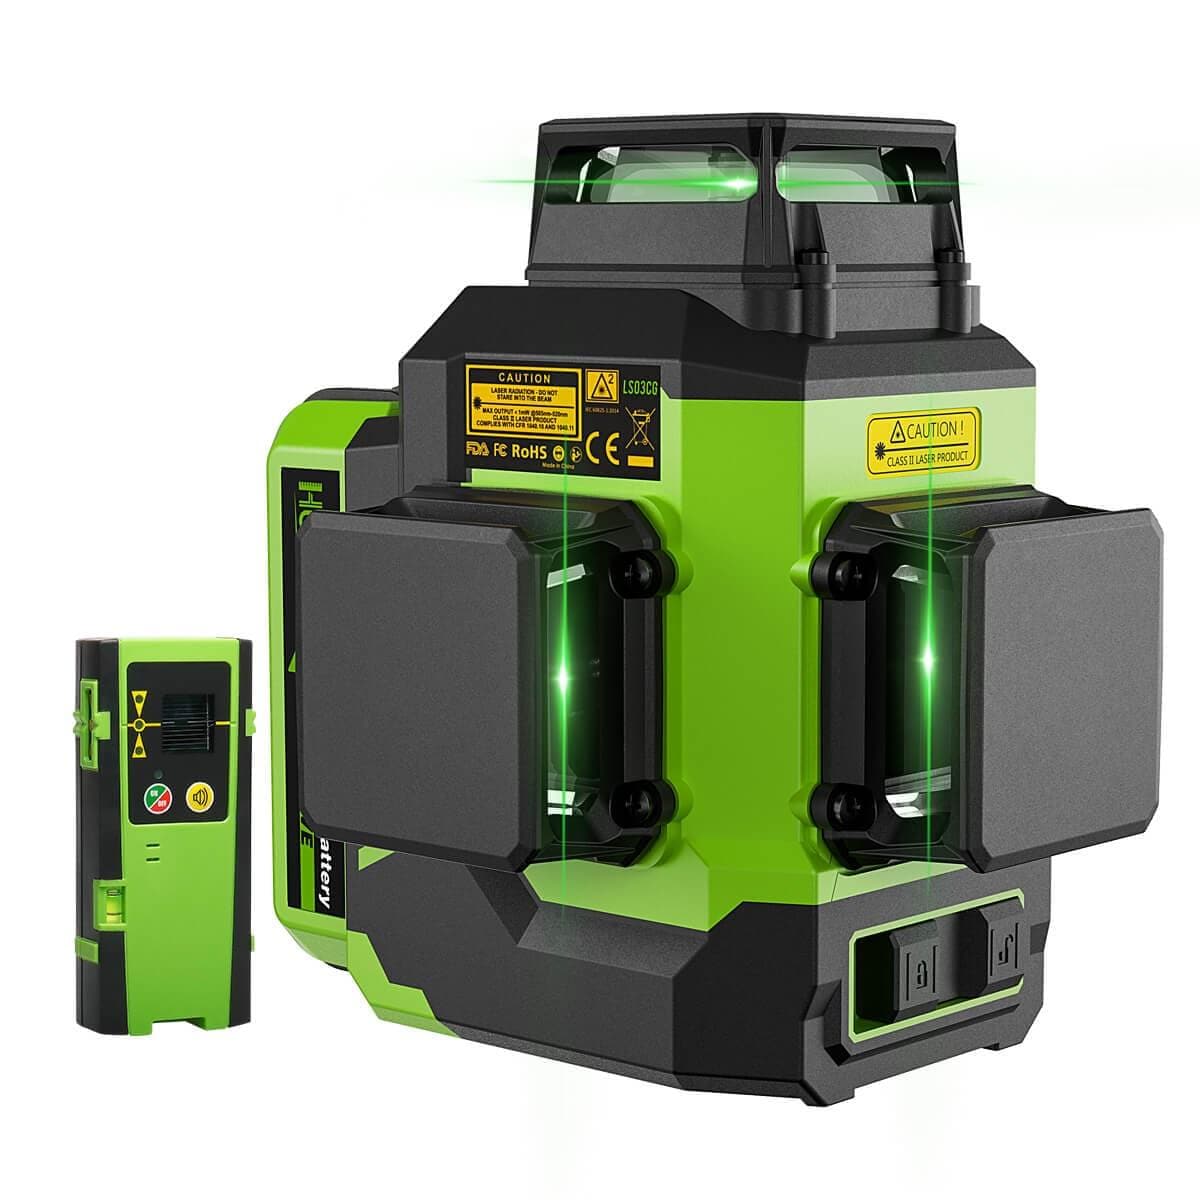 Huepar 9011G - Green Laser Level DIY Cross Line Laser Self L